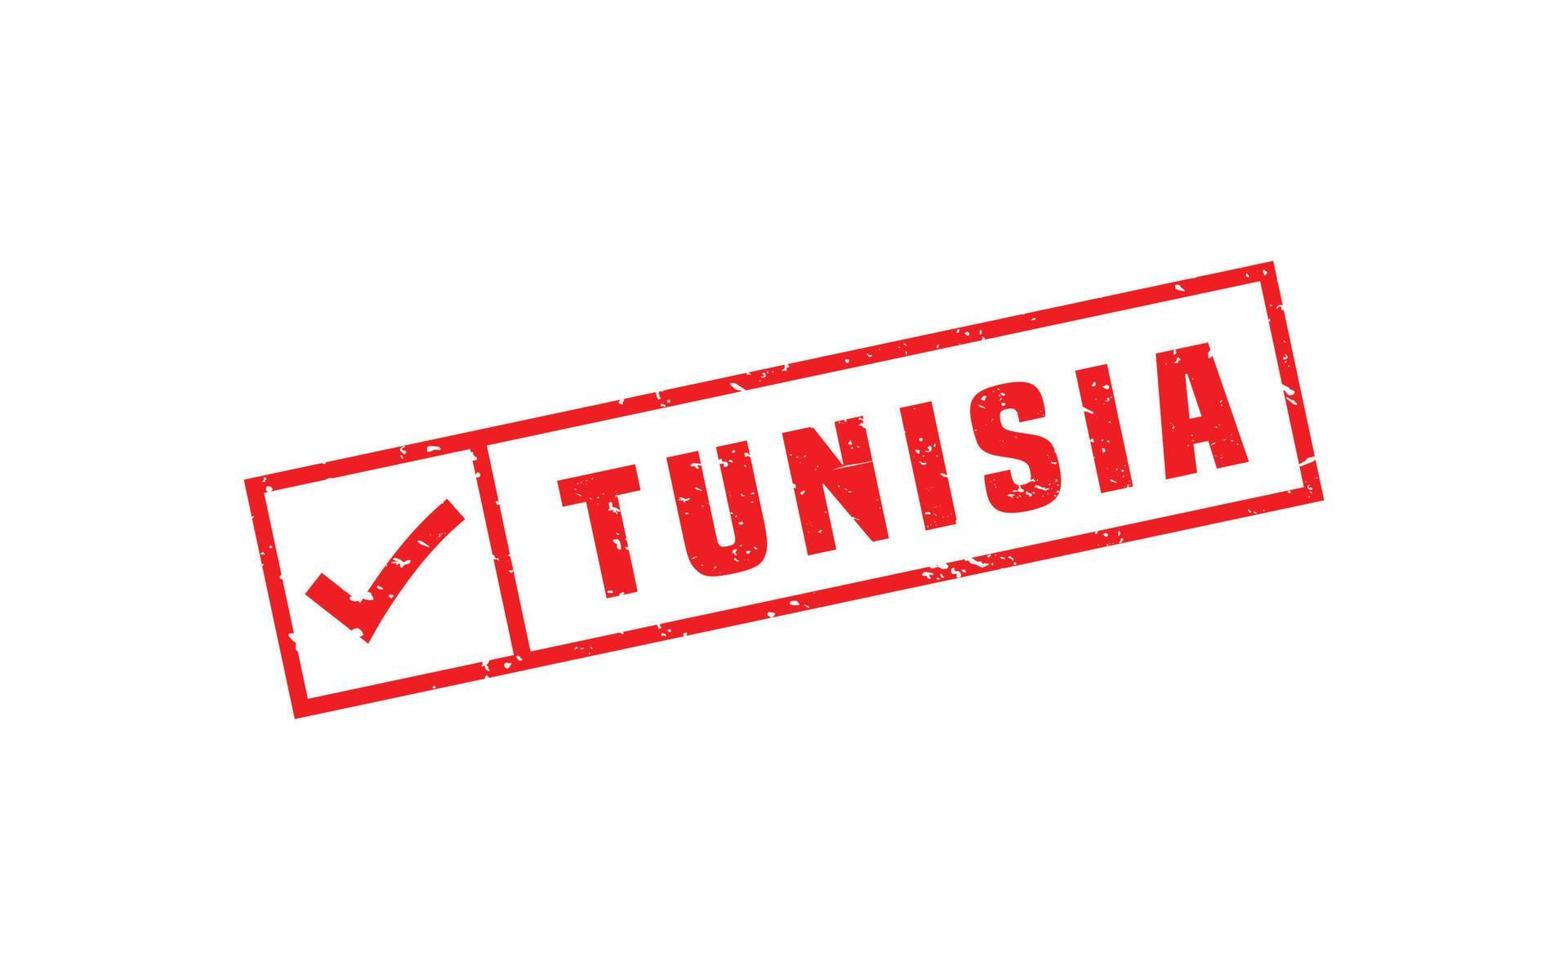 Tunesien Briefmarke Gummi mit Grunge Stil auf Weiß Hintergrund vektor